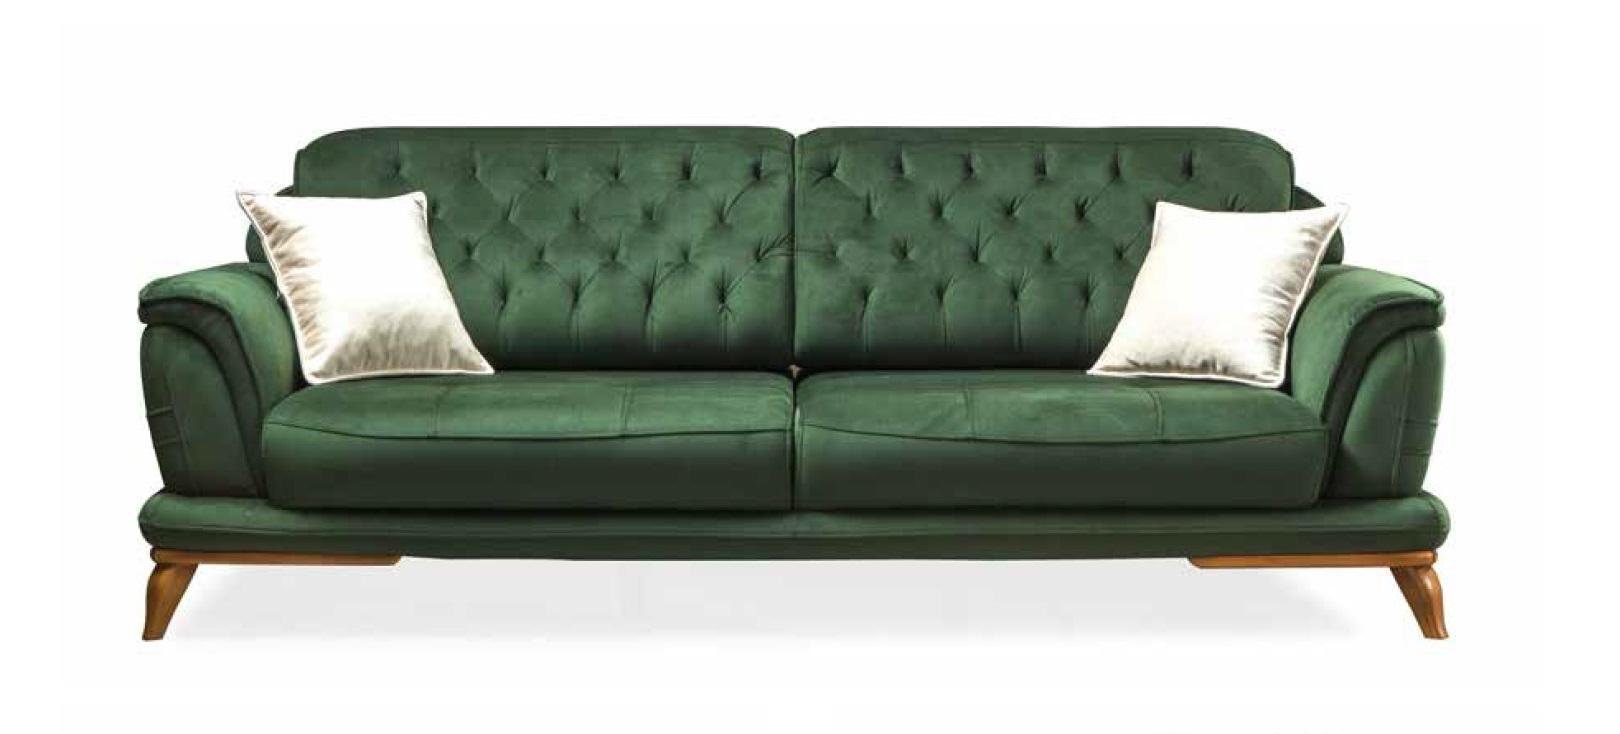 JVmoebel Sofa Moderner Luxus Chesterfield Dreisitzer 3-Sitzer Couch Möbel Neu, Made in Europe